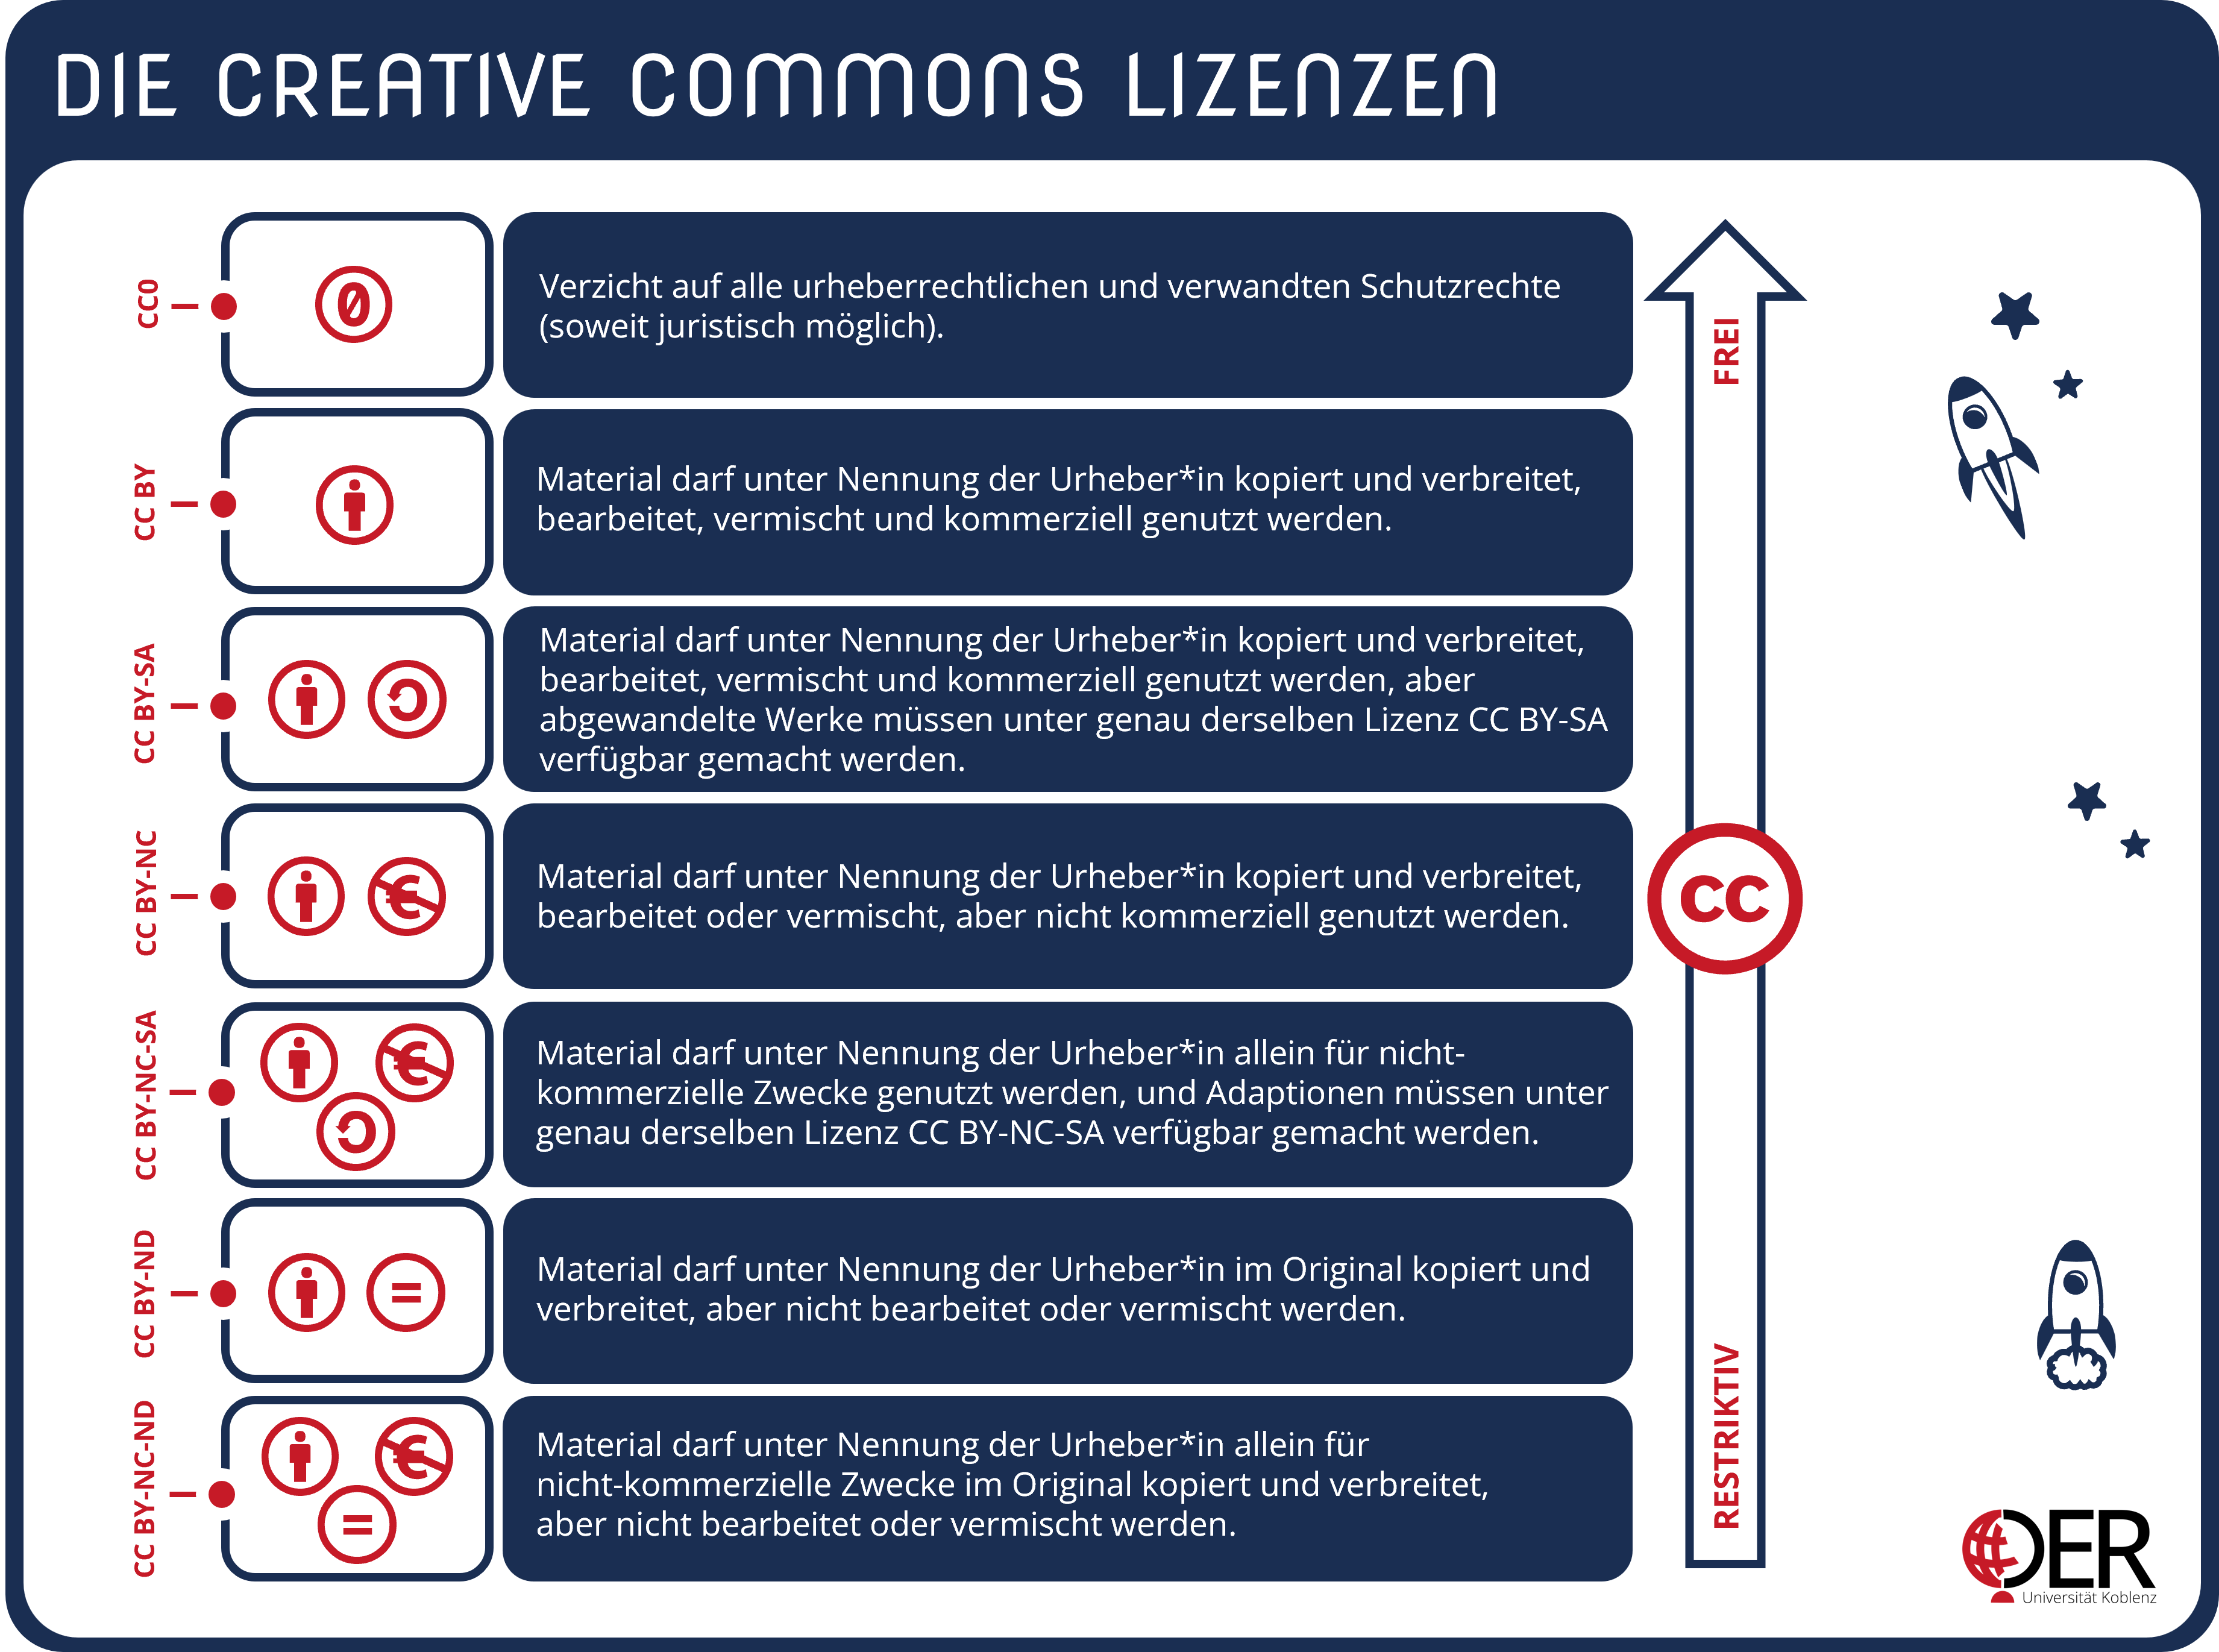 Die sieben Creative Commons Lizenzen im Überblick: CC0, CC BY, CC BY-SA, CC BY-NC, CC BY-NC-SA, CC BY-ND und CC BY-NC-ND.